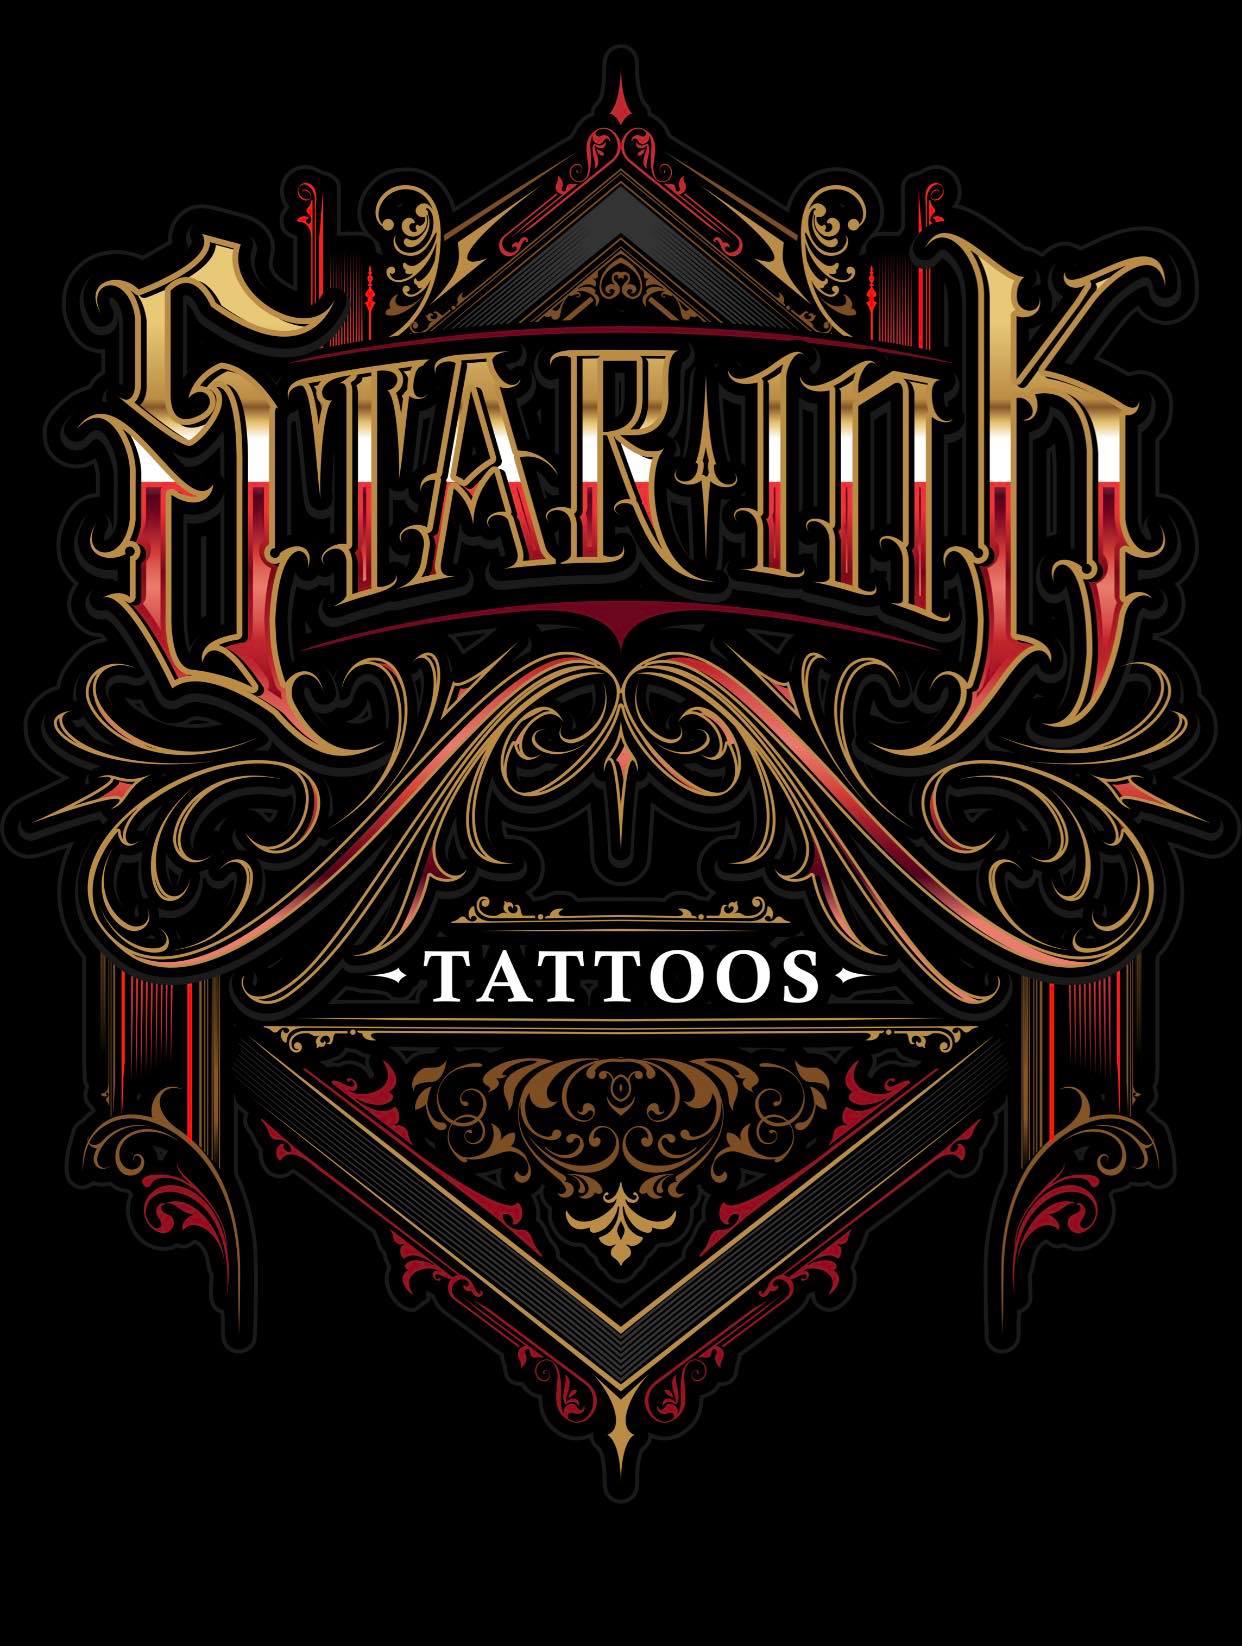 Tattoo Shop of the Year | Waco Awards